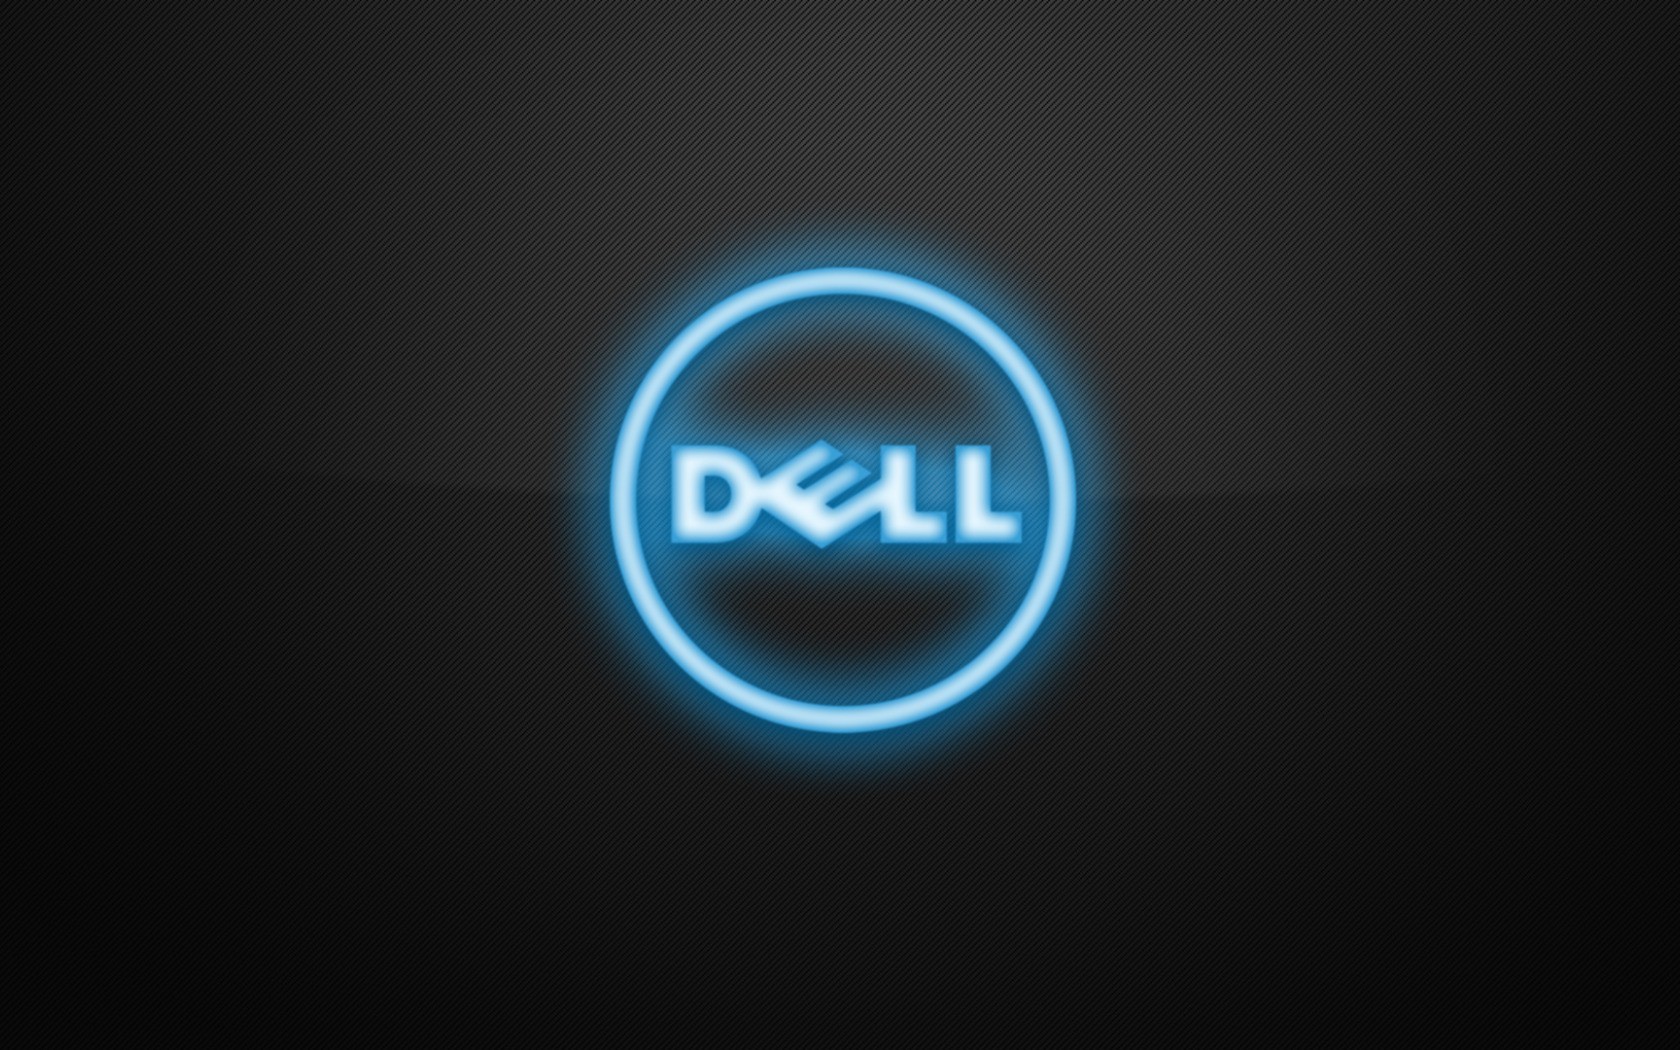 Dell Brand Logo Light Mobile Desktop Free Hd Wallpaper